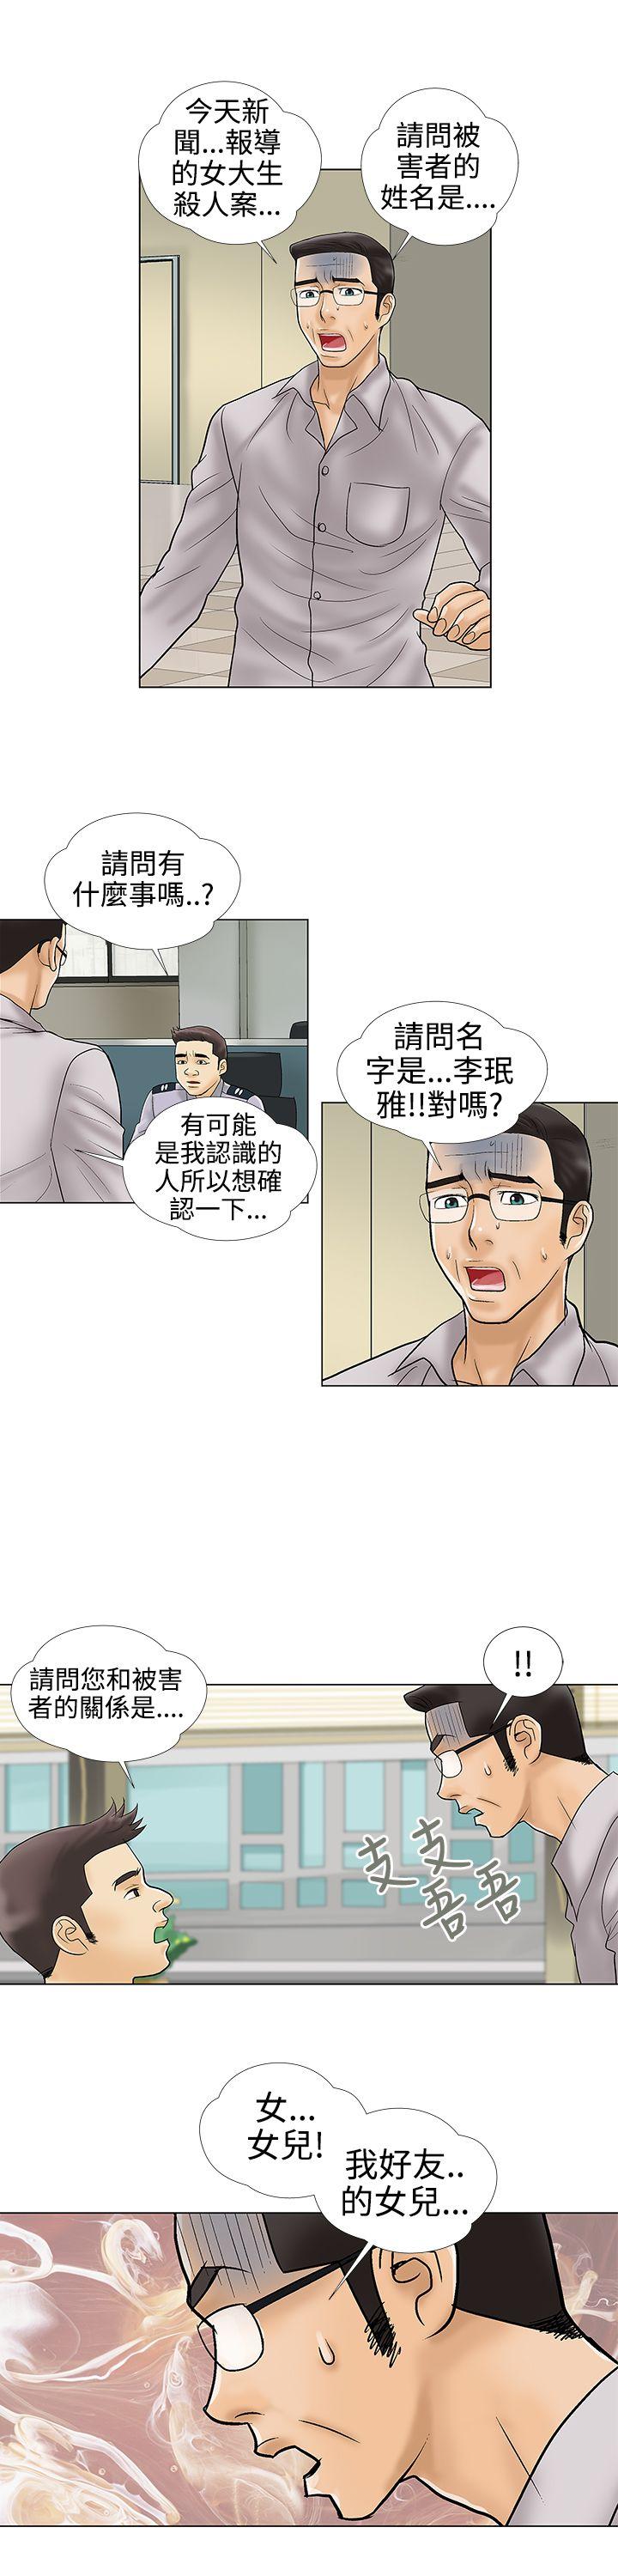 危险的爱(完结)  最终话 漫画图片3.jpg